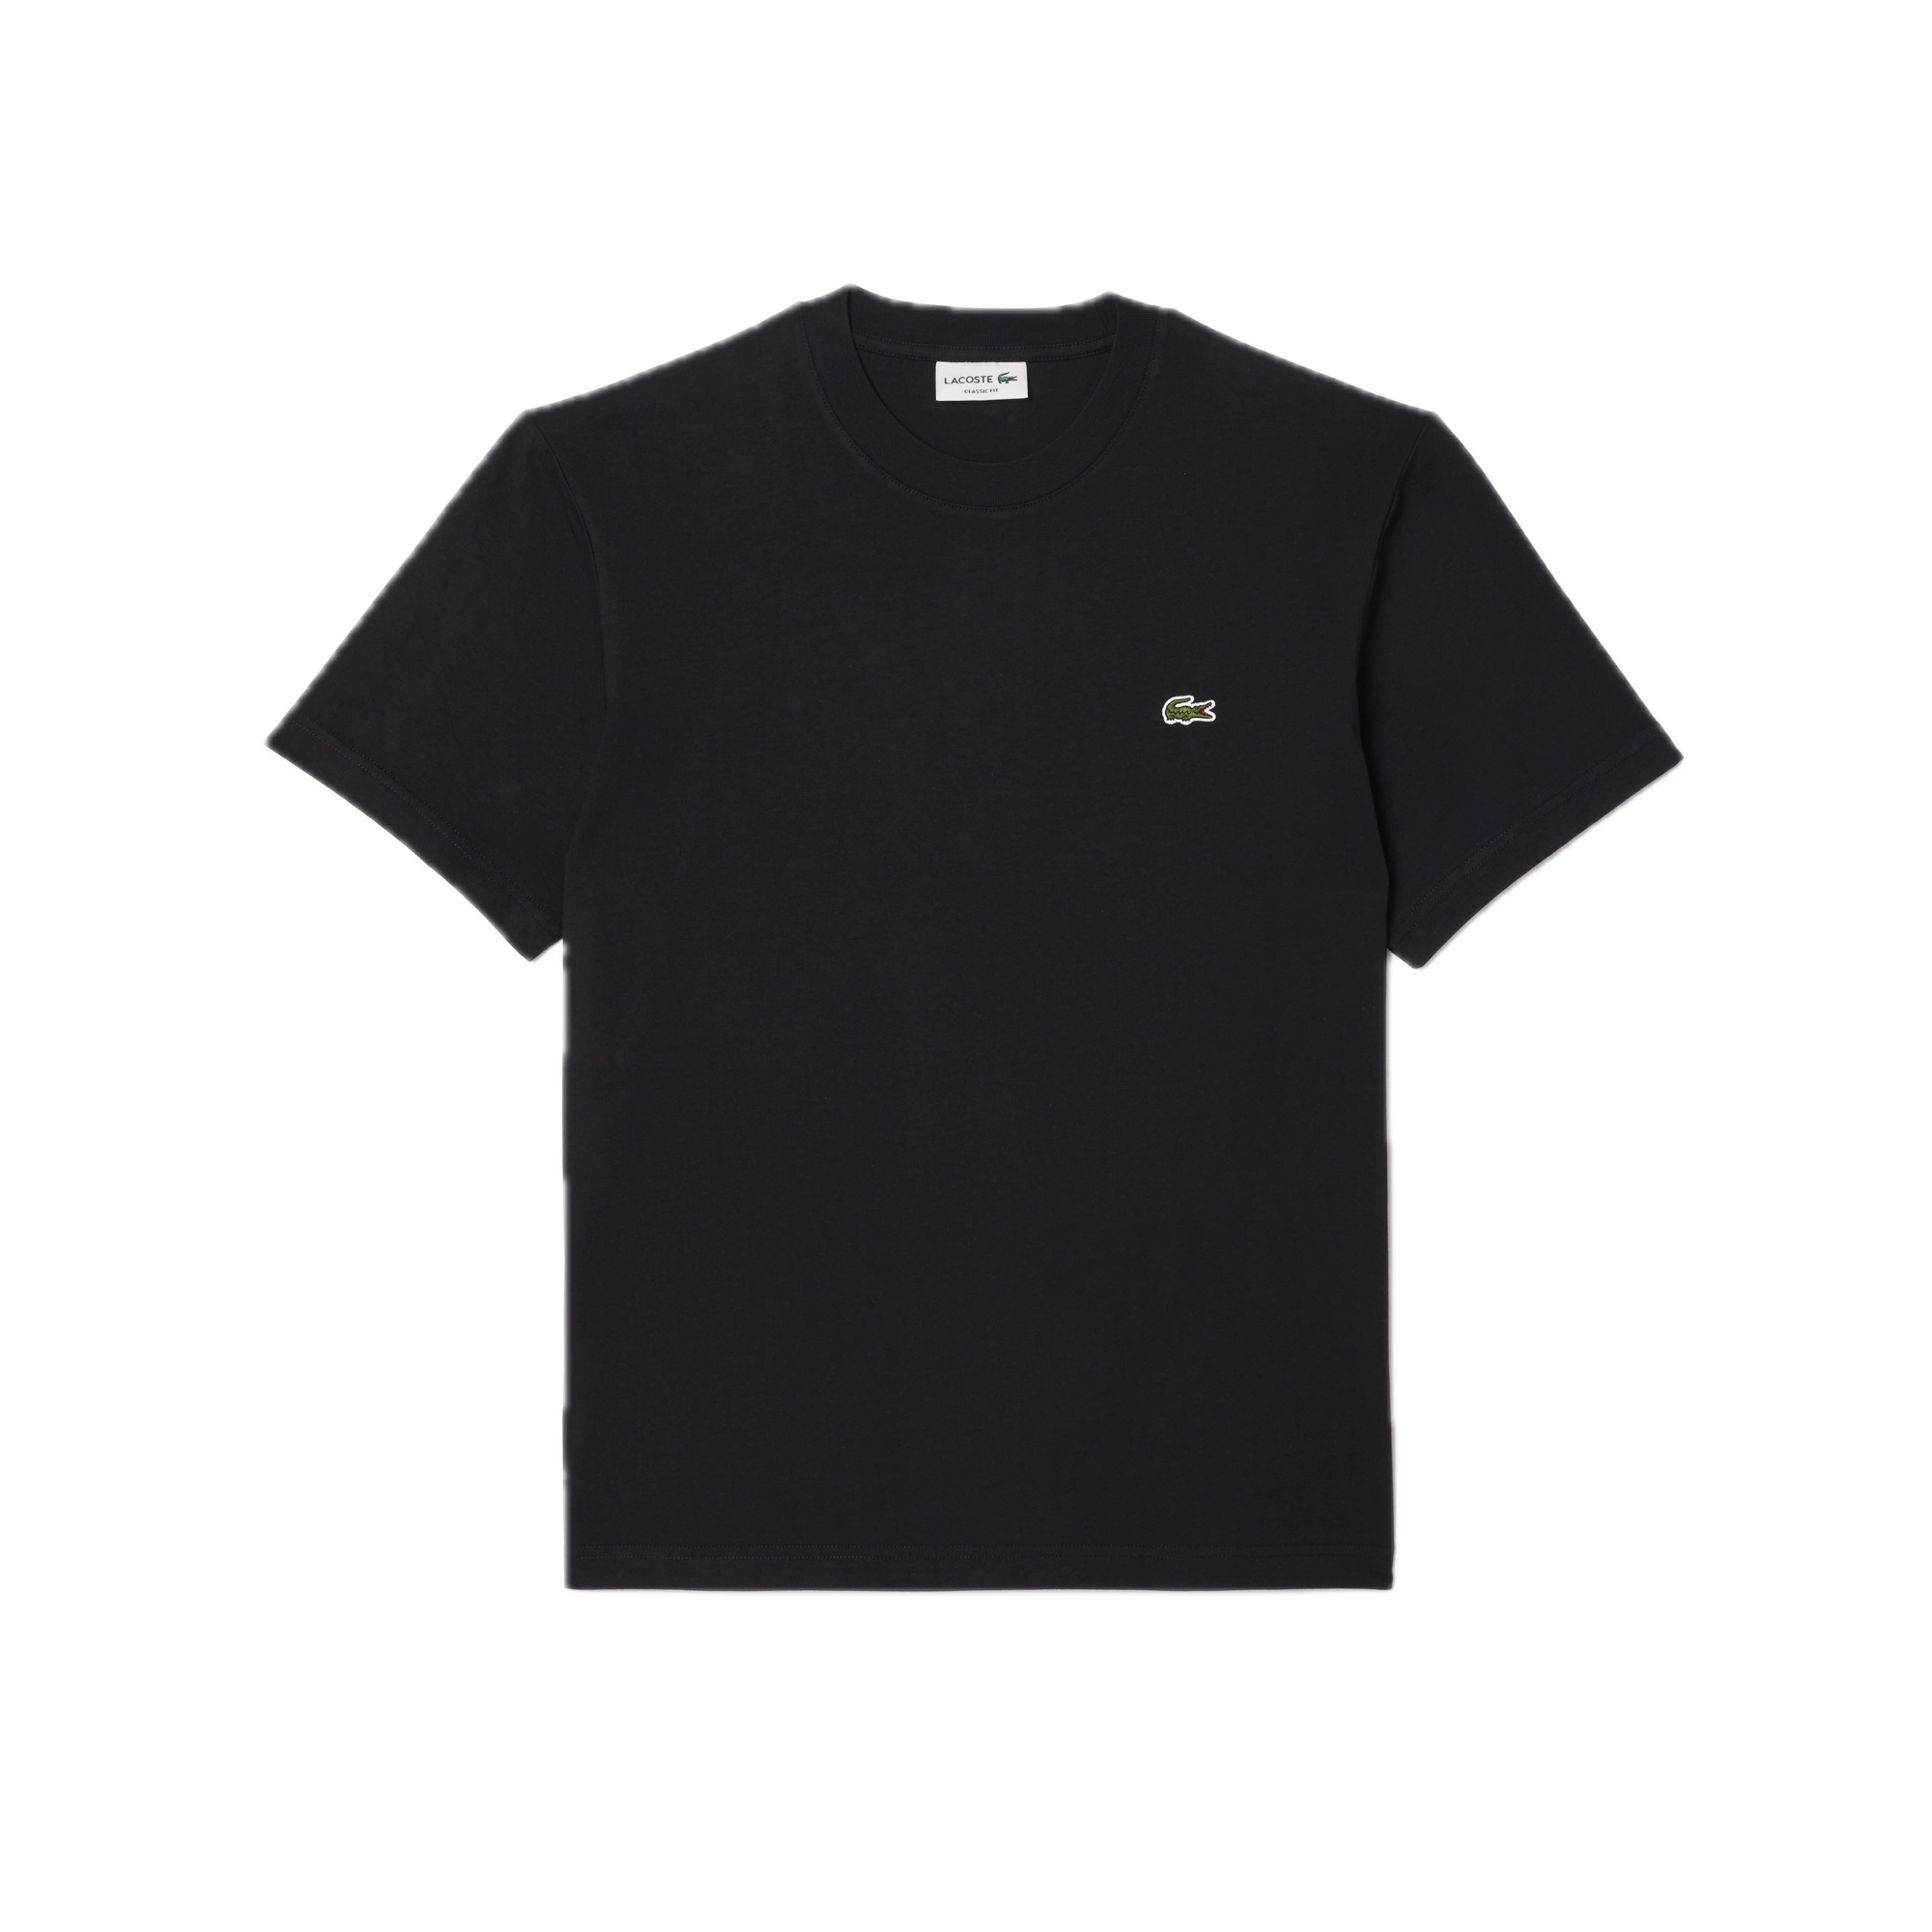 Camiseta Lacoste de Corte Clásico de Punto de Algodón Negra